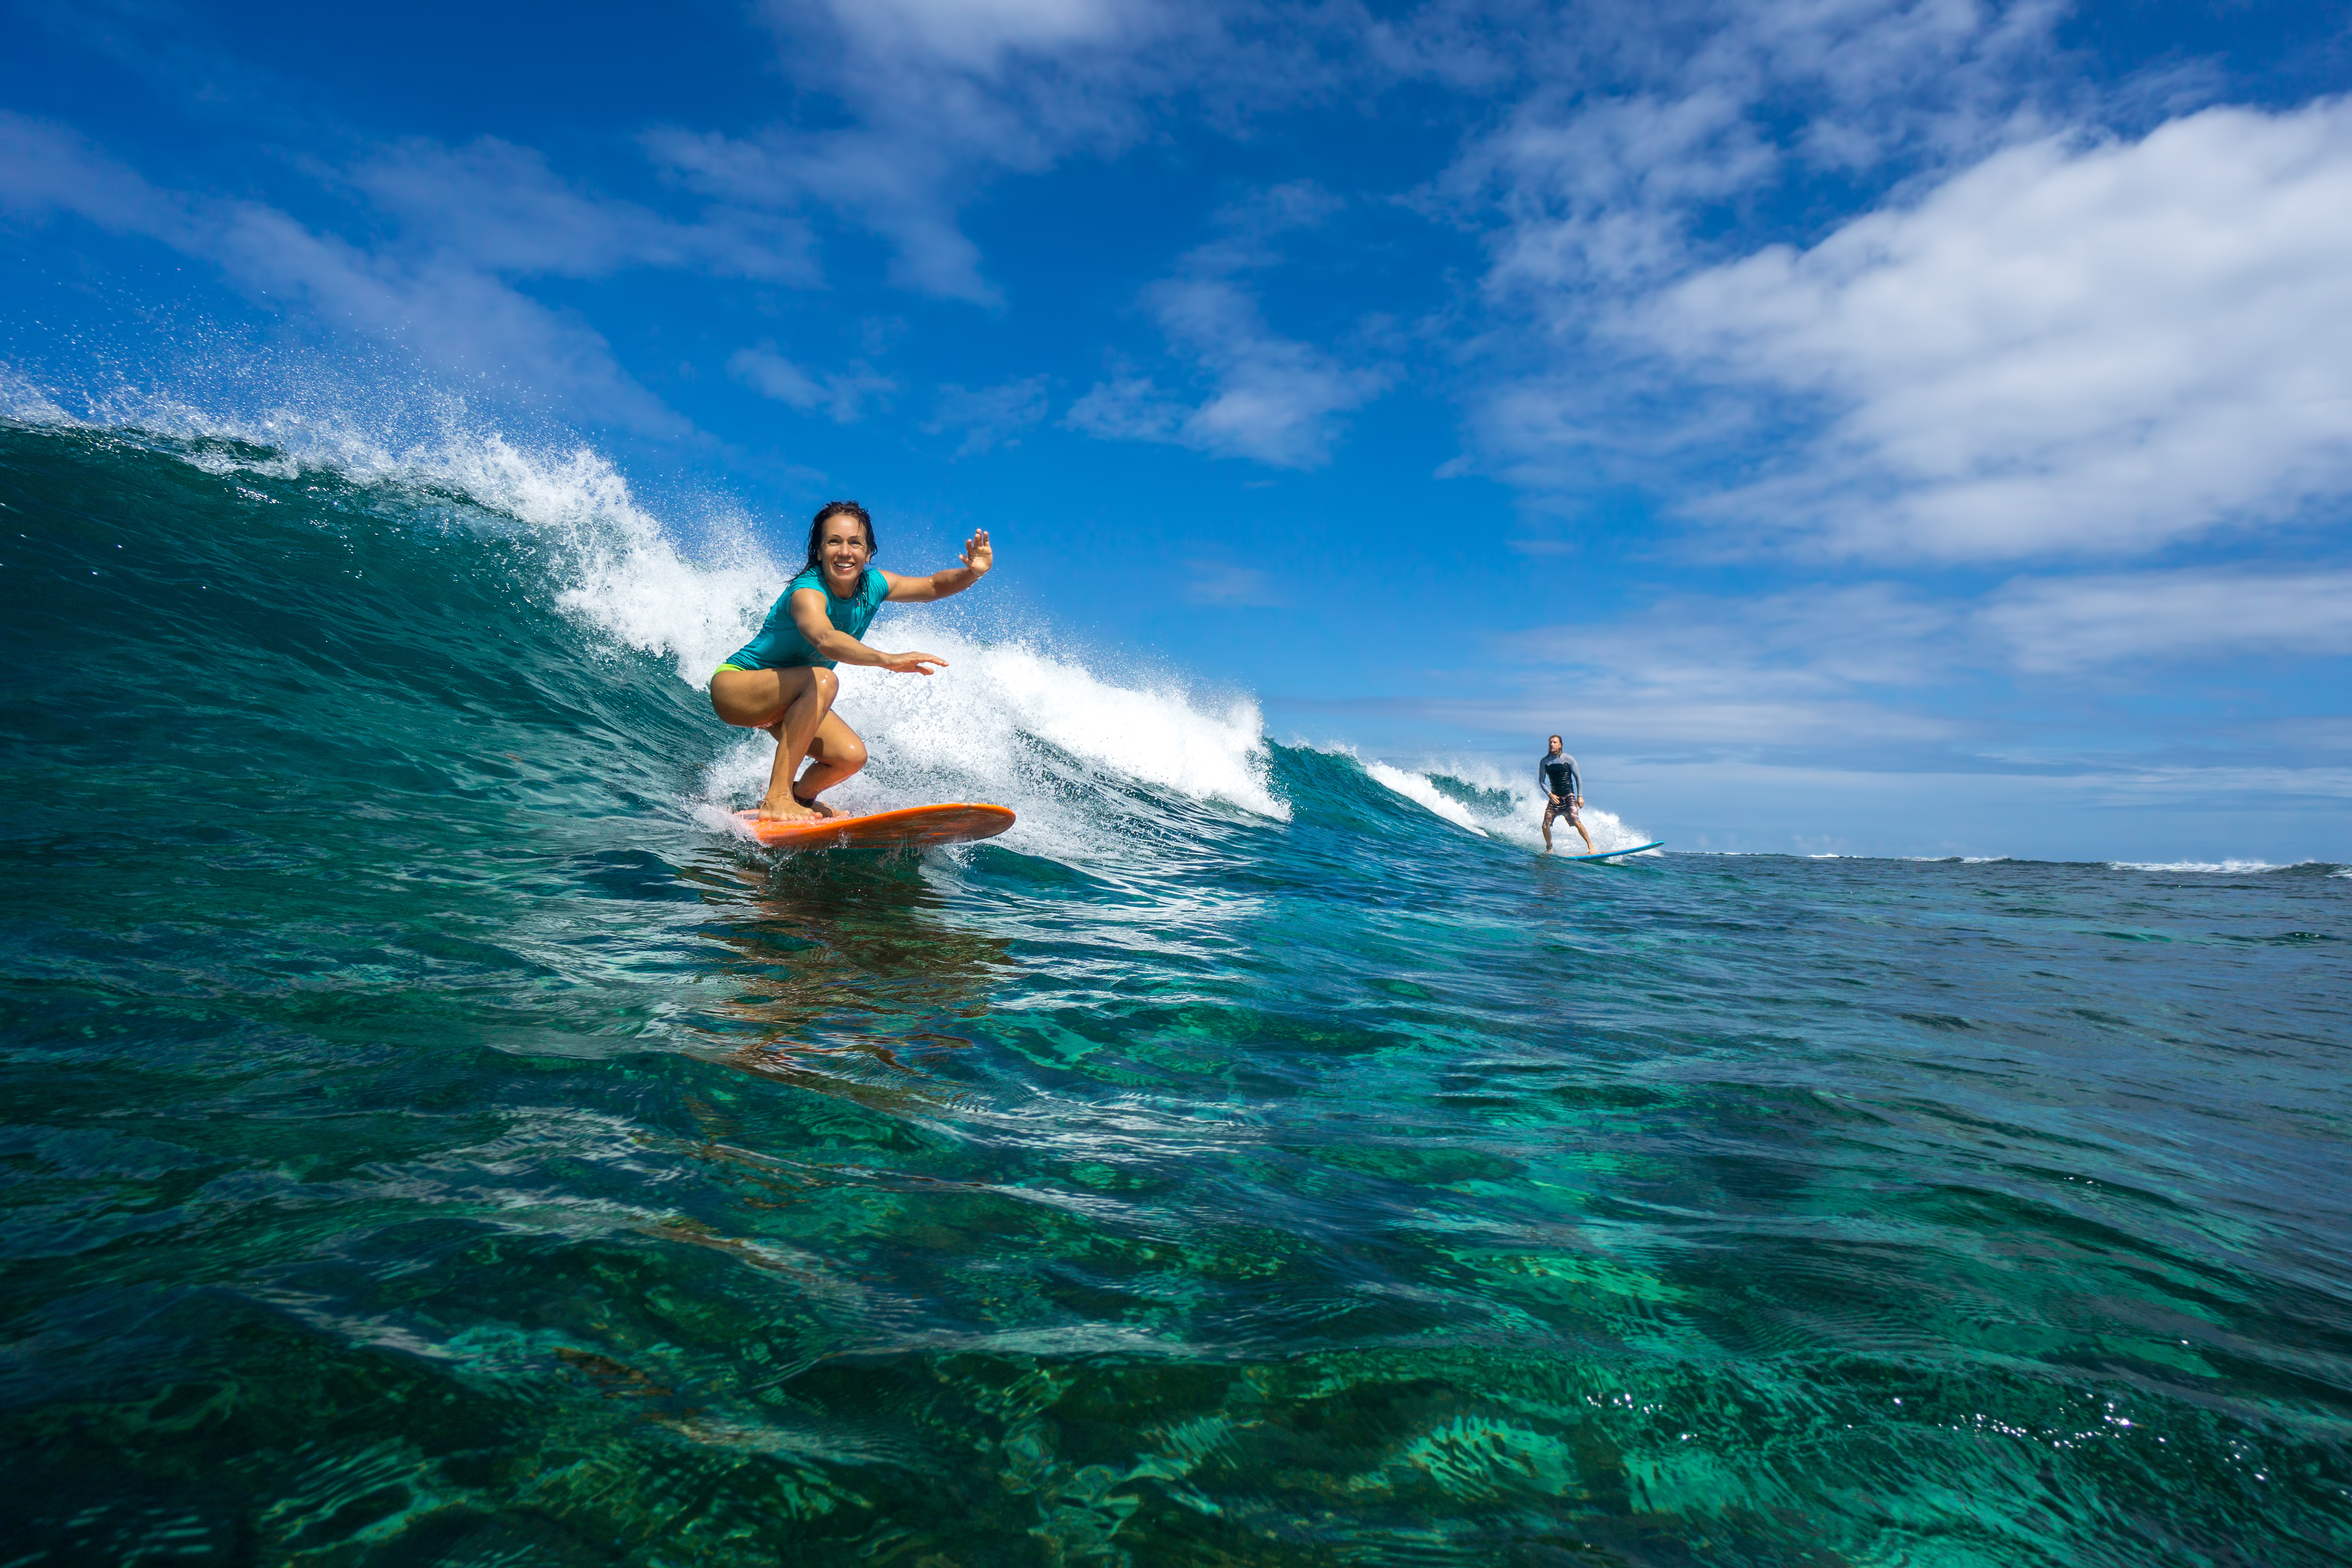 Surfer, die eine Welle reiten. Ein Ritt mit dem Surfbrett gehört zu den top 12 Sehenswürdigkeiten auf den Malediven.